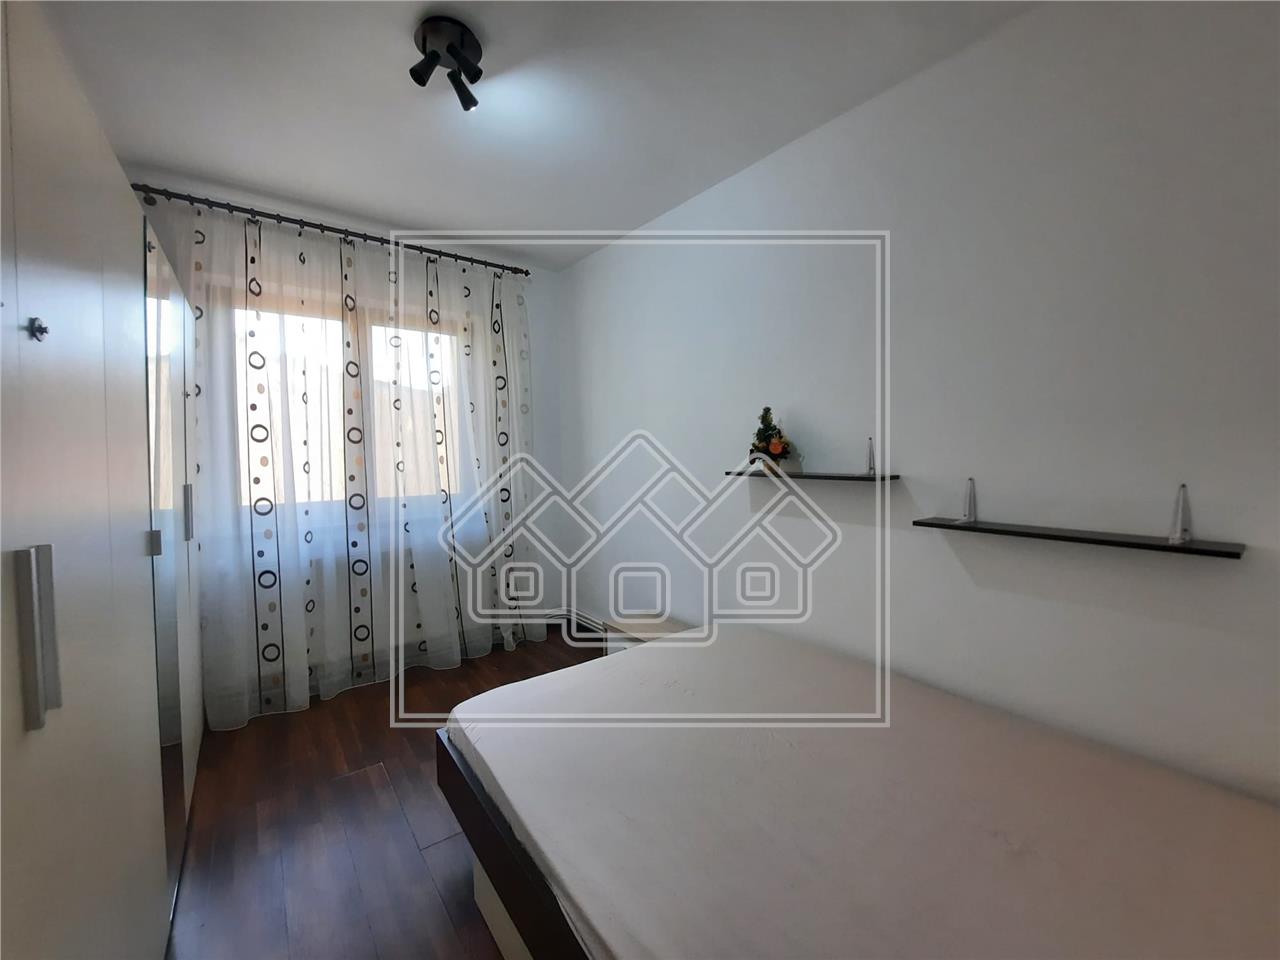 Apartment for sale in Alba Iulia - 4 rooms - enclosed balcony - Cetate